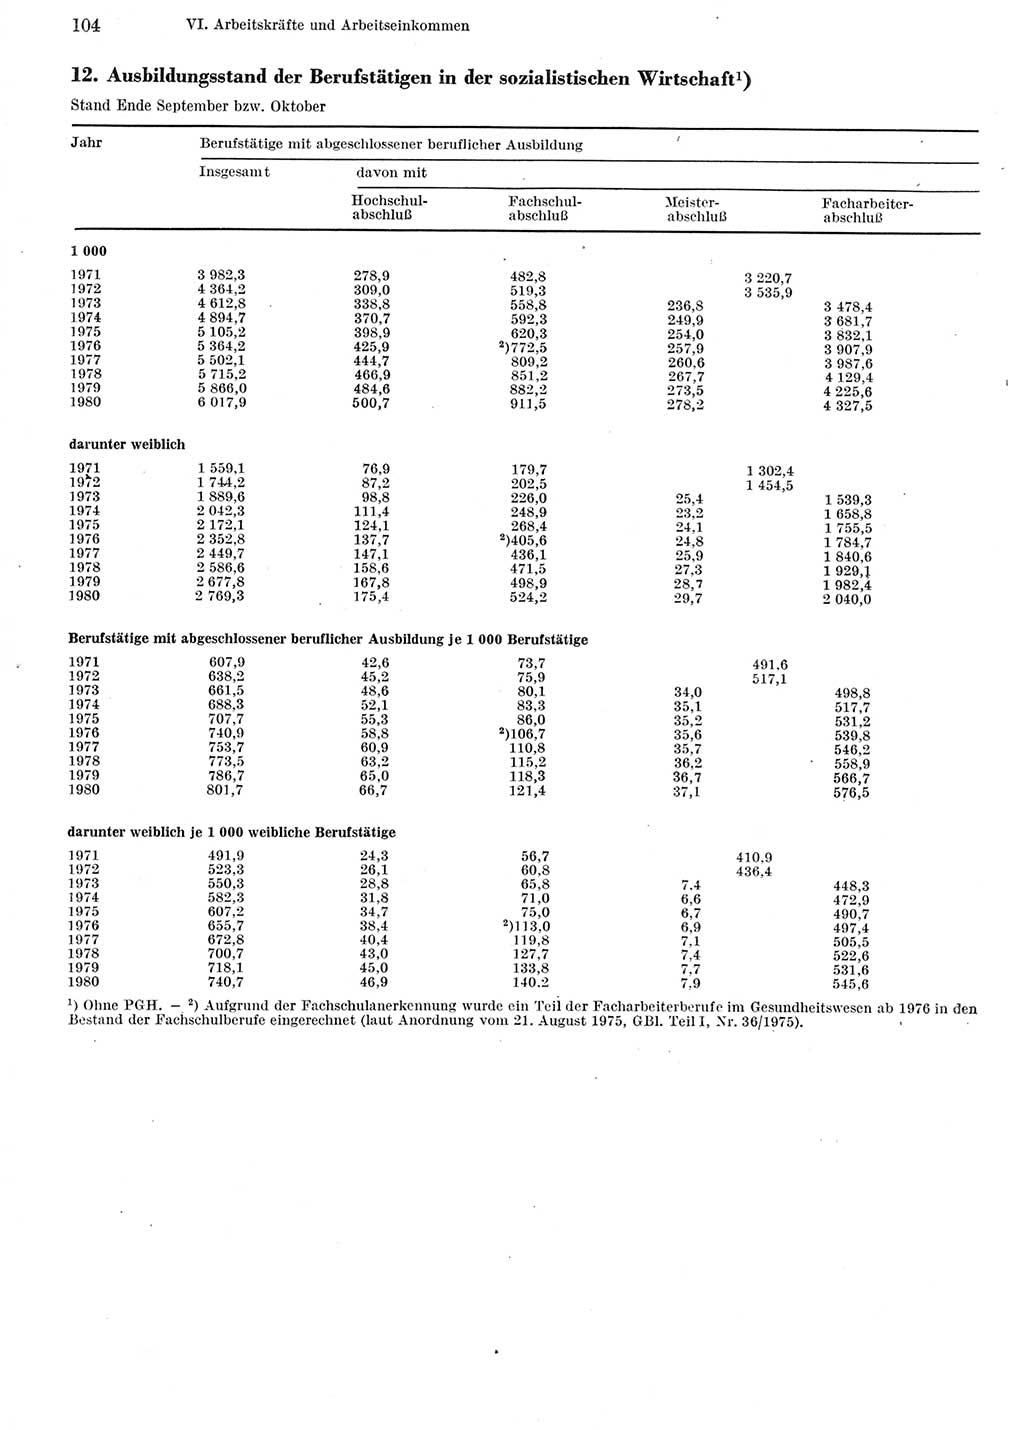 Statistisches Jahrbuch der Deutschen Demokratischen Republik (DDR) 1981, Seite 104 (Stat. Jb. DDR 1981, S. 104)